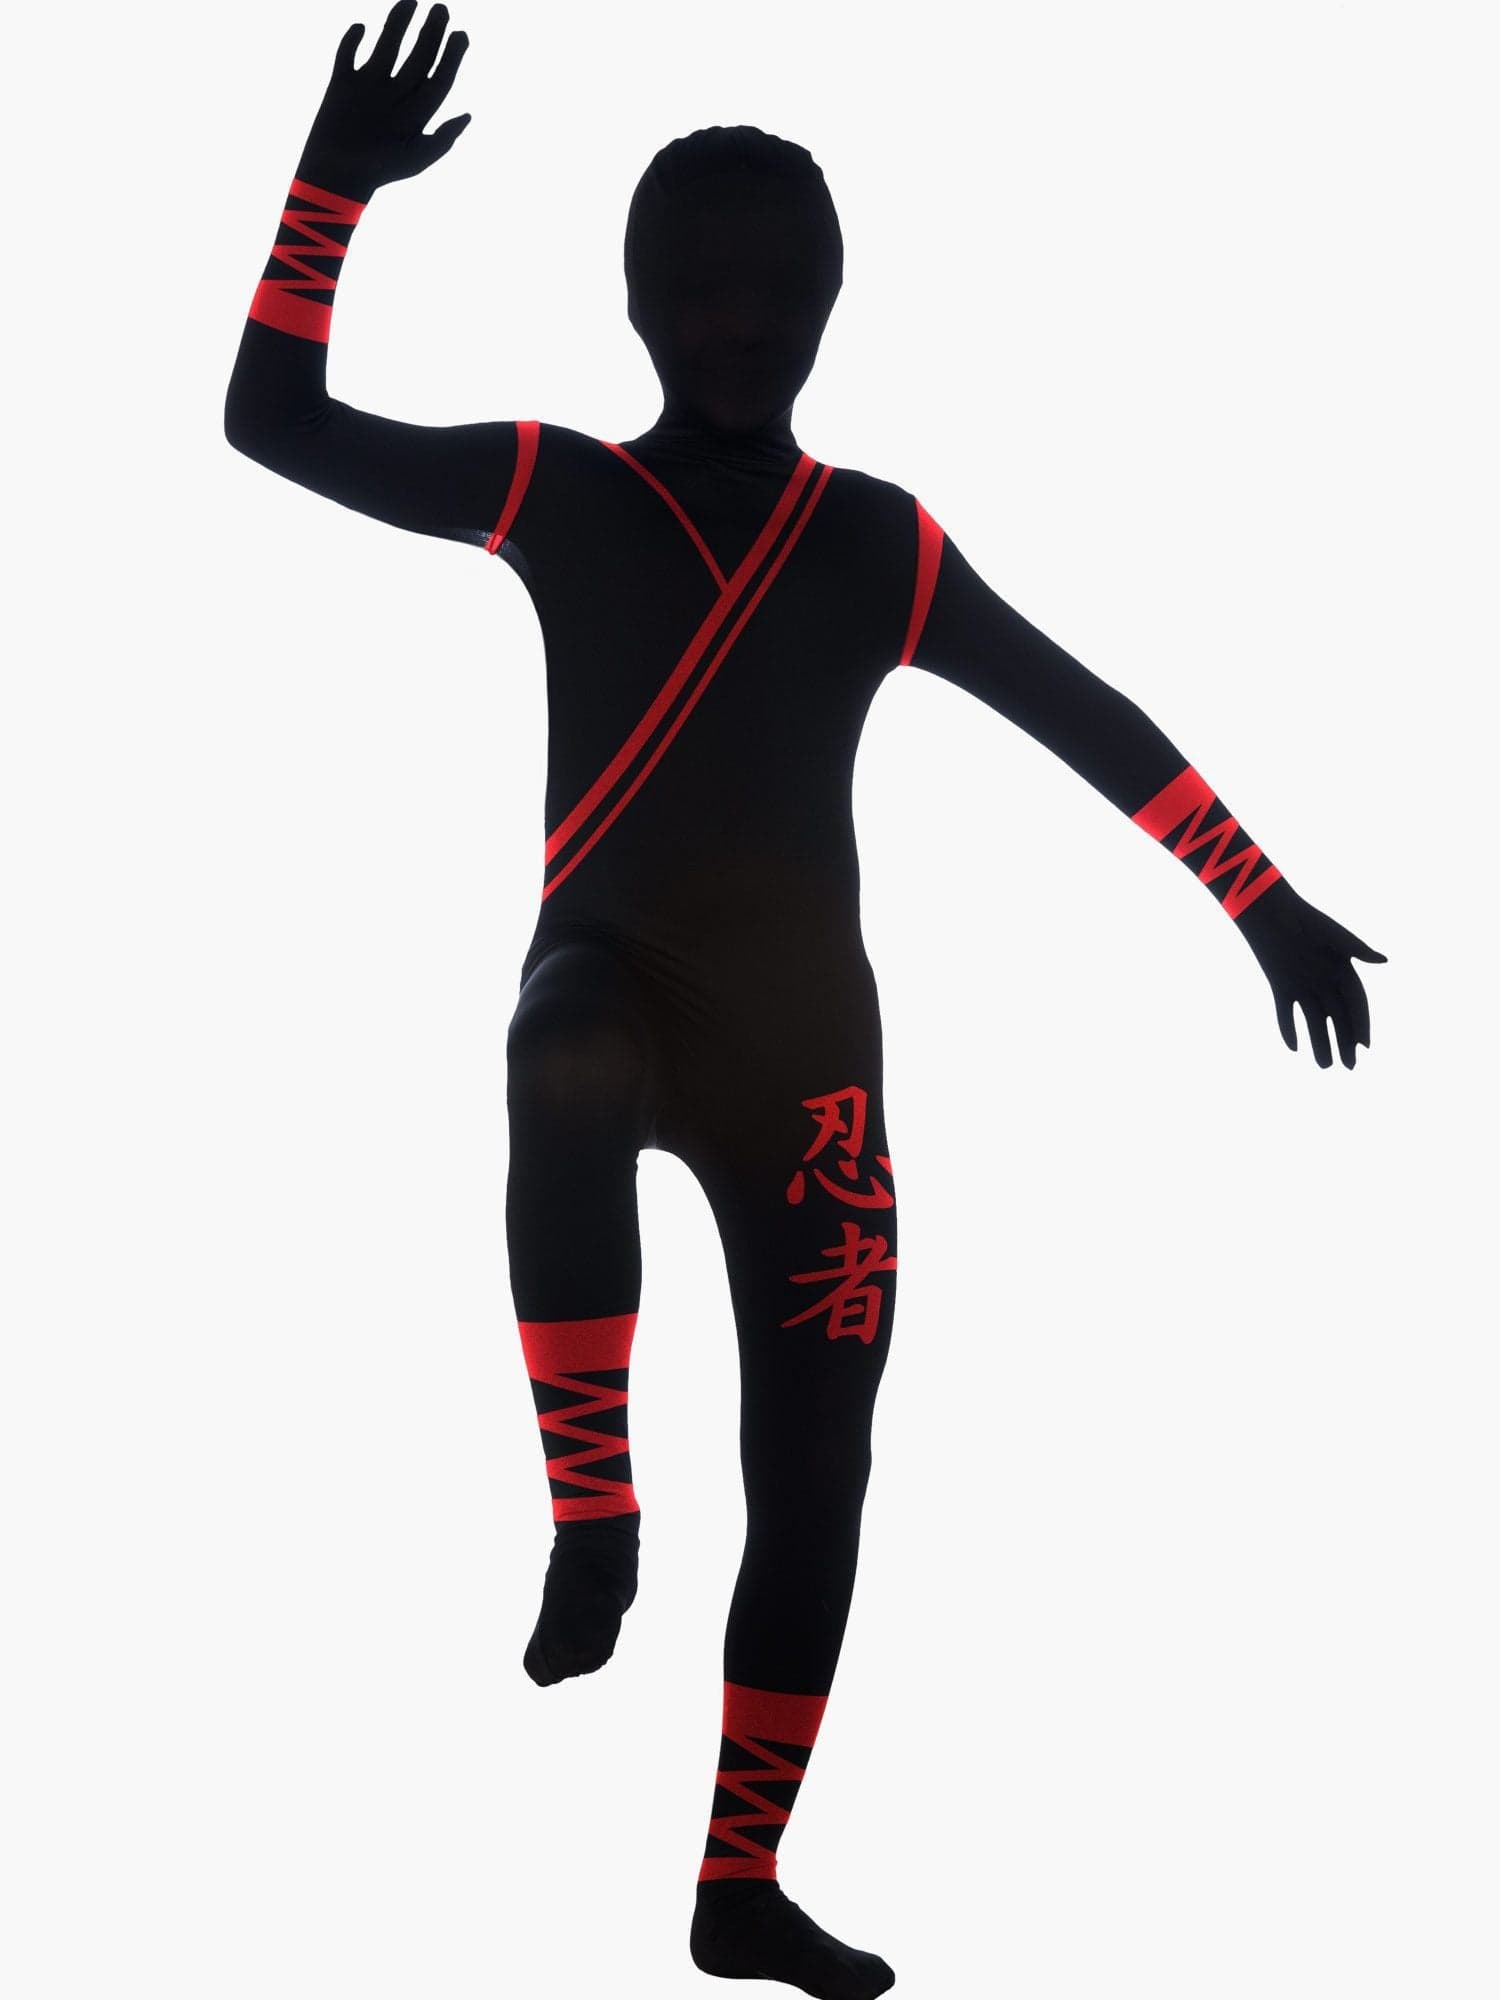 Kids Ninja 2nd Skin Costume - costumes.com